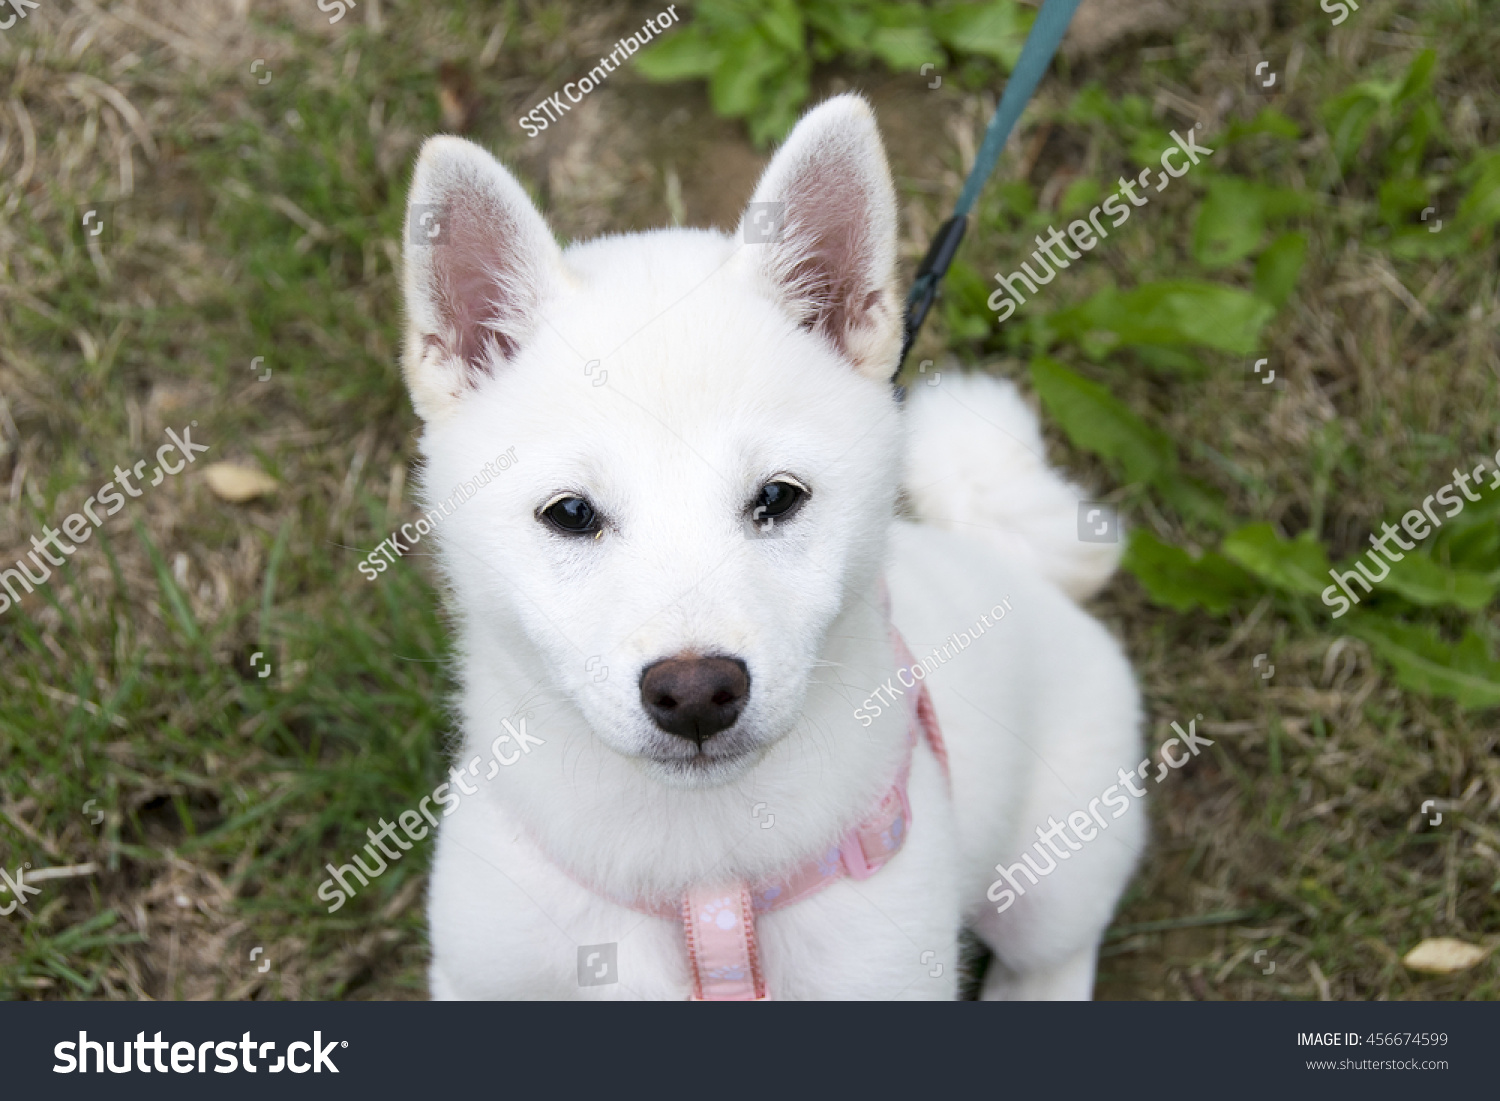 White Shibainu Puppy Portrait On Grass Stock Photo ...